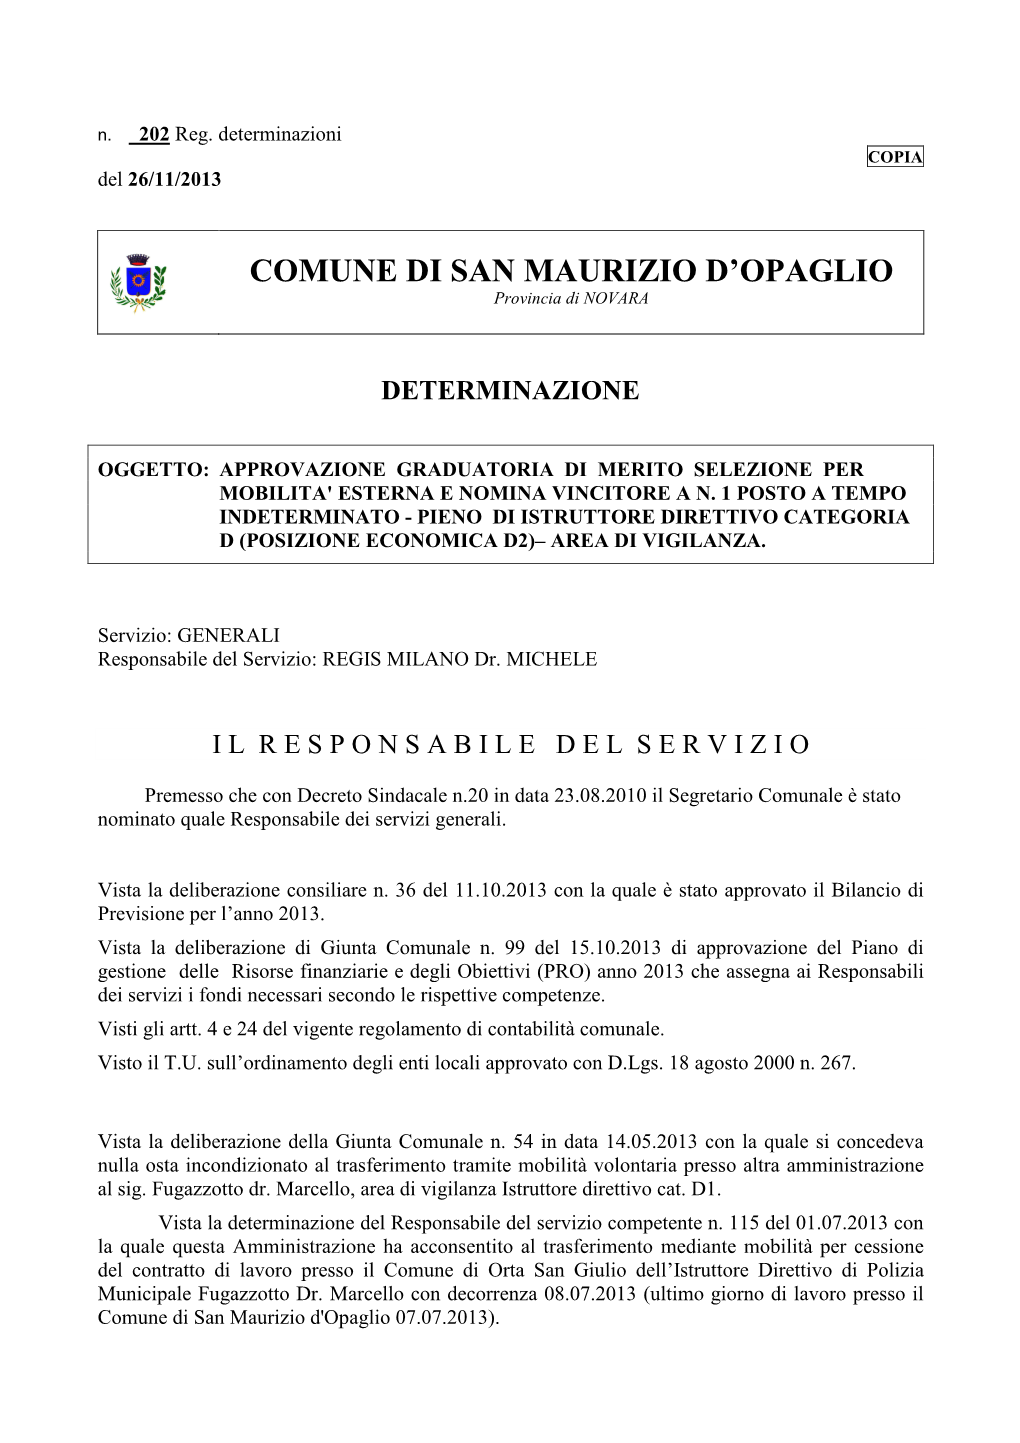 Comune Di San Maurizio D'opaglio 07.07.2013)